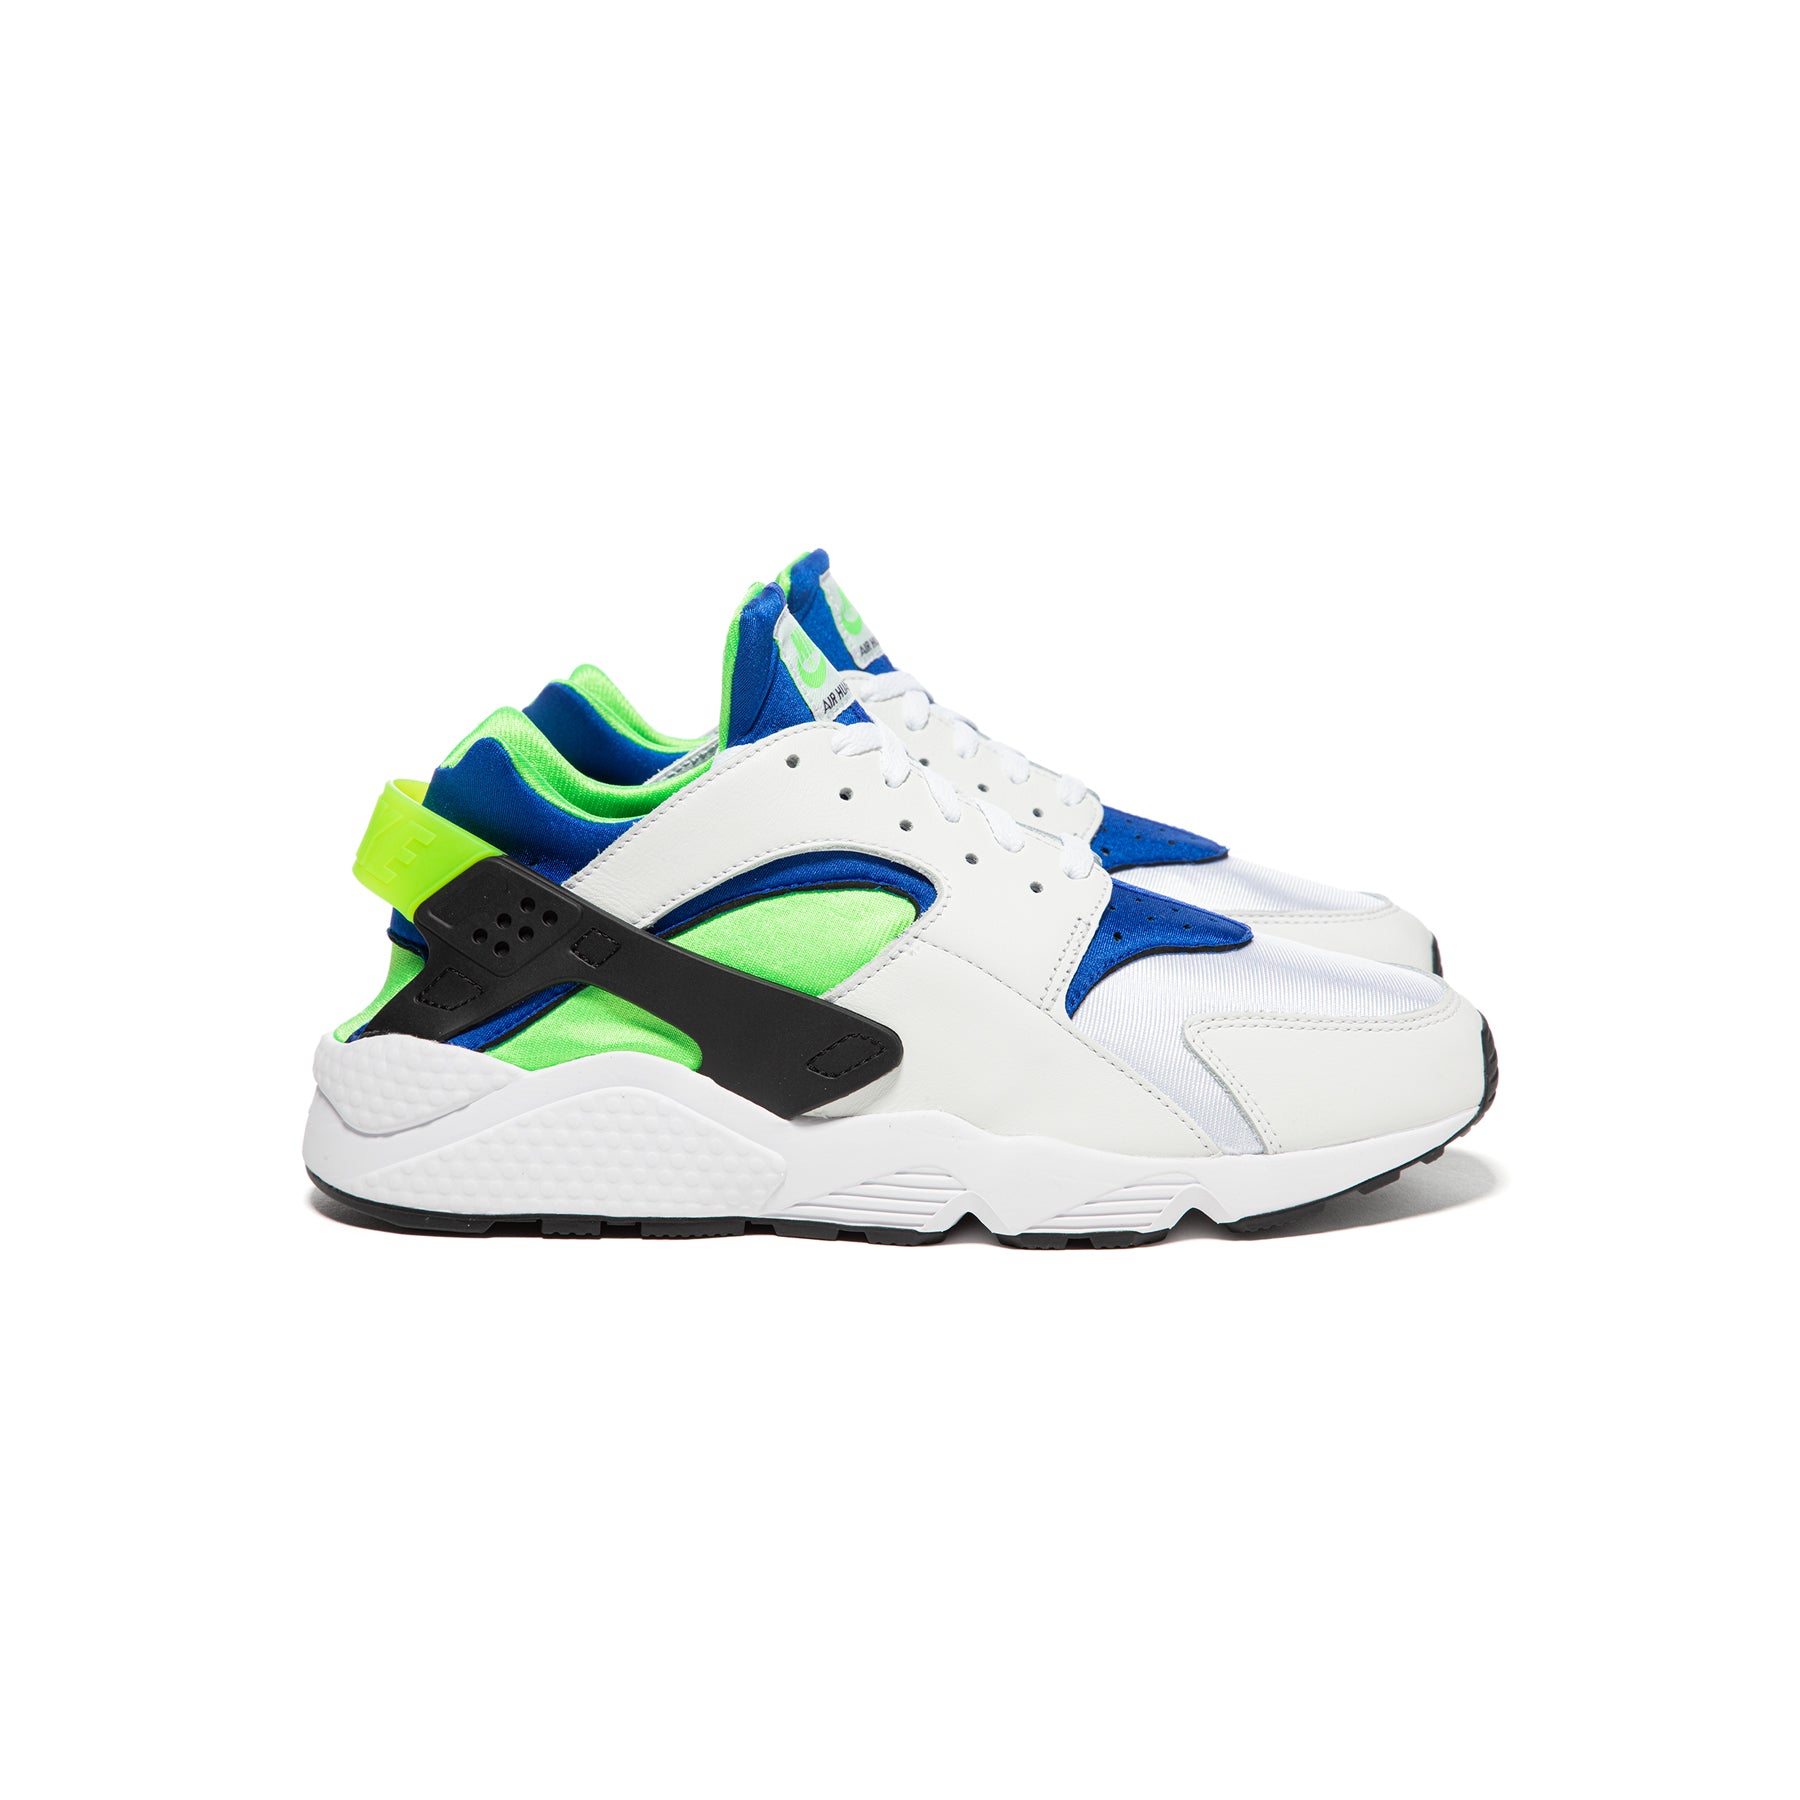 Nike Air Huarache (White/Scream Green/Royal Blue) Concepts